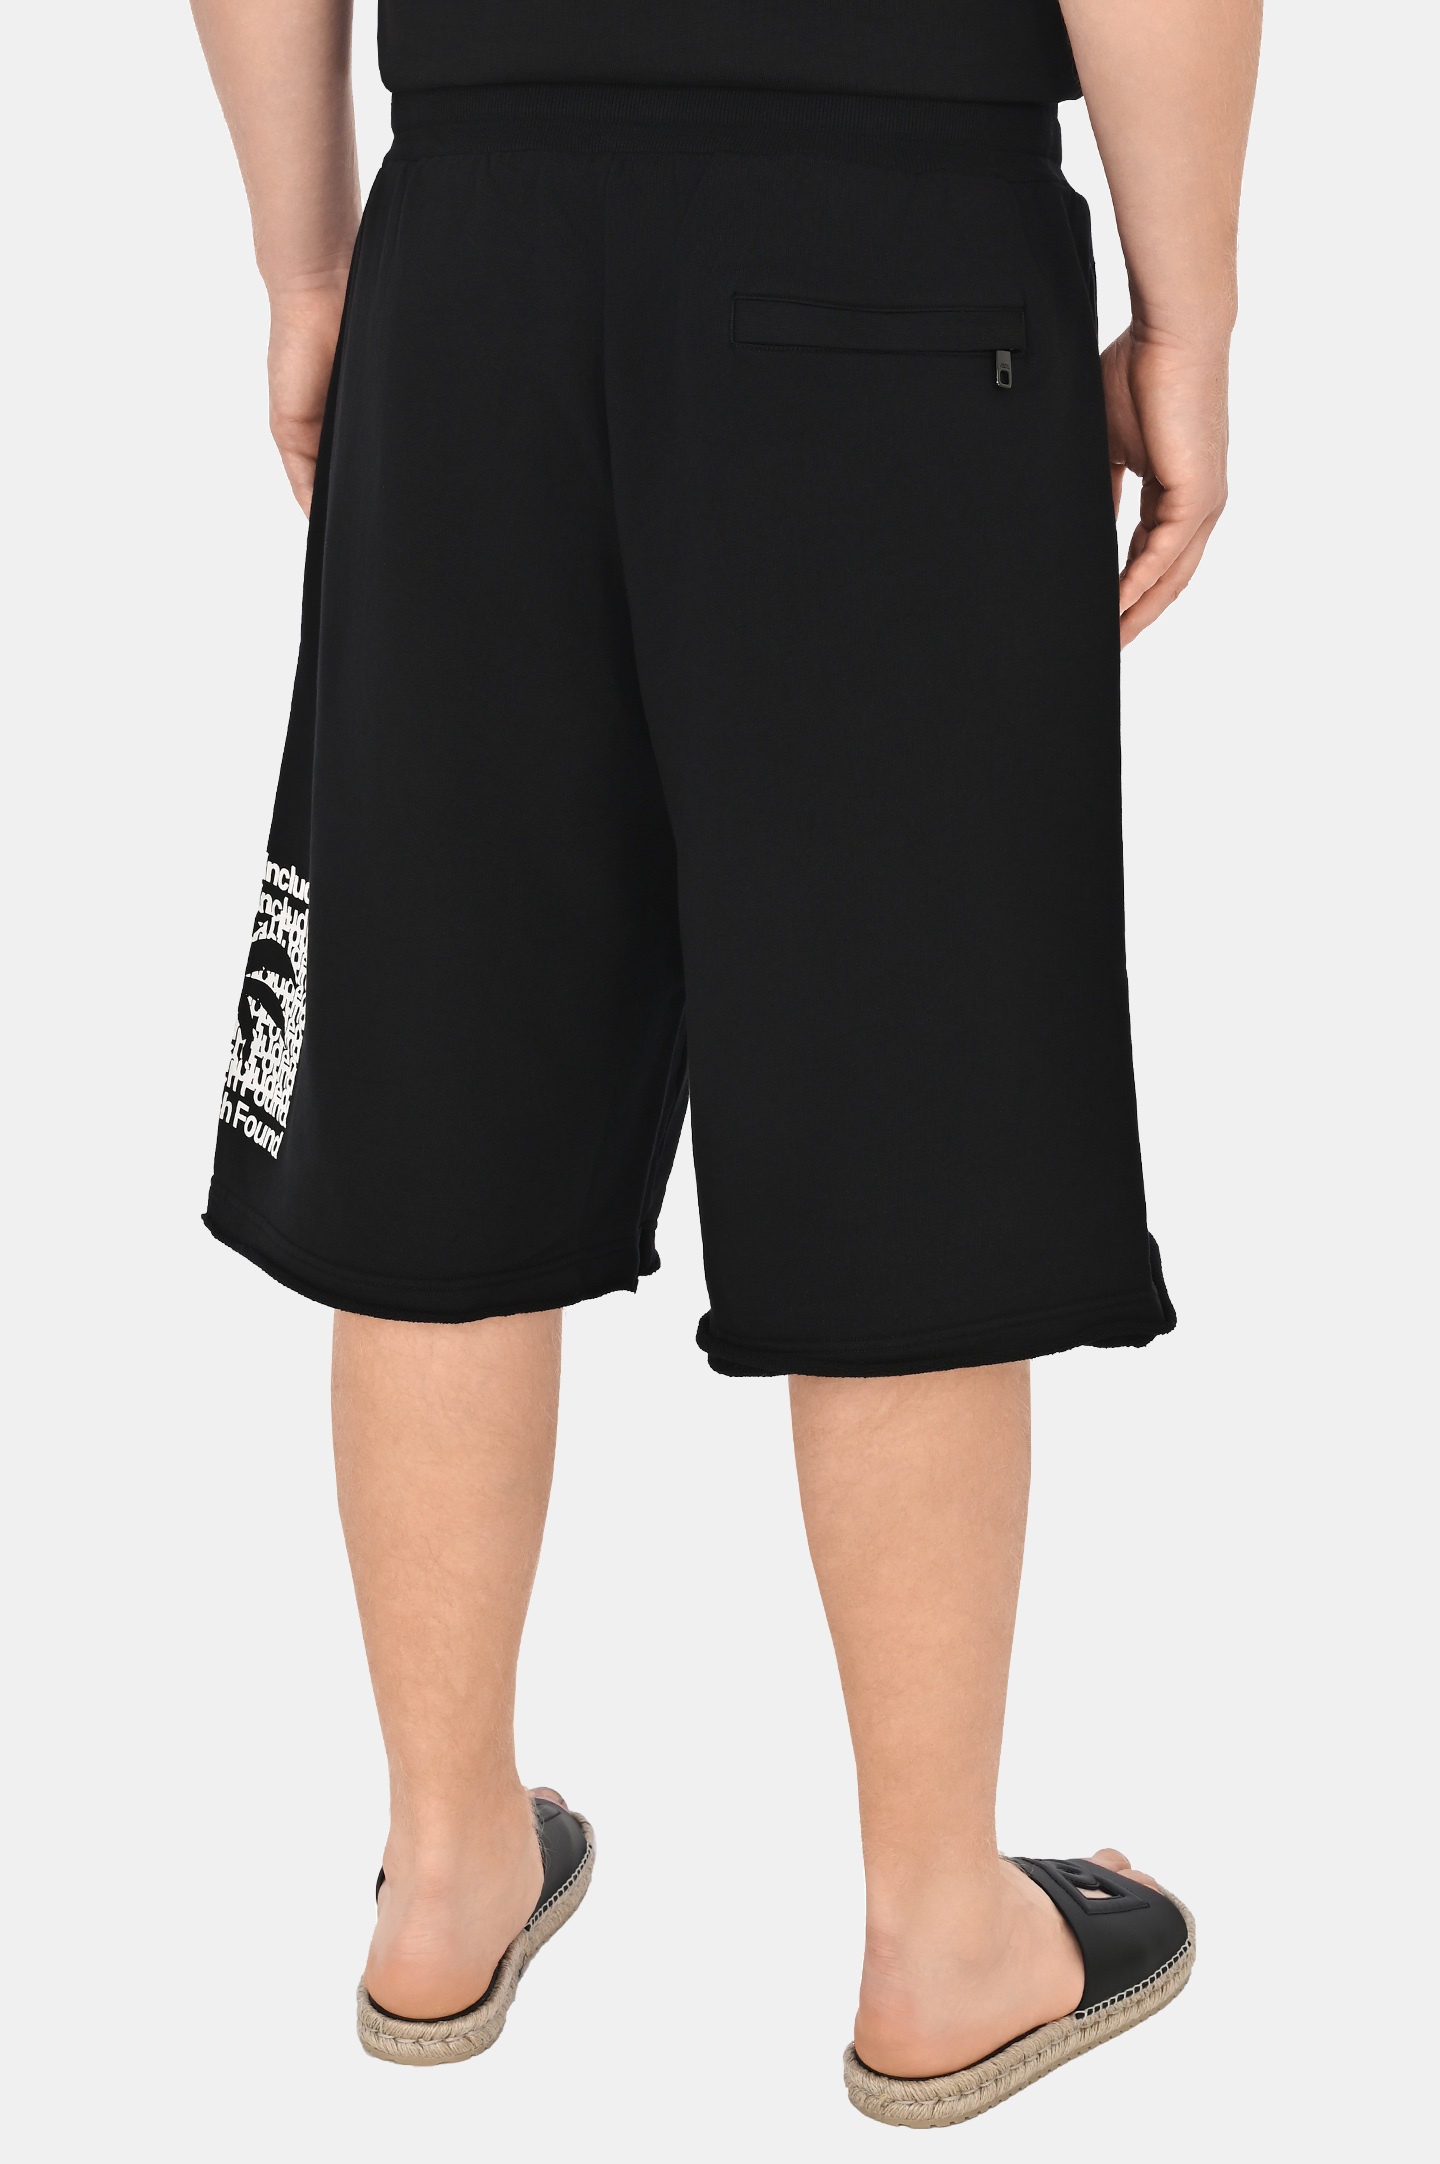 Хлопковые шорты с принтом DOLCE & GABBANA GVUZAT G7K1S, цвет: Черный, Мужской